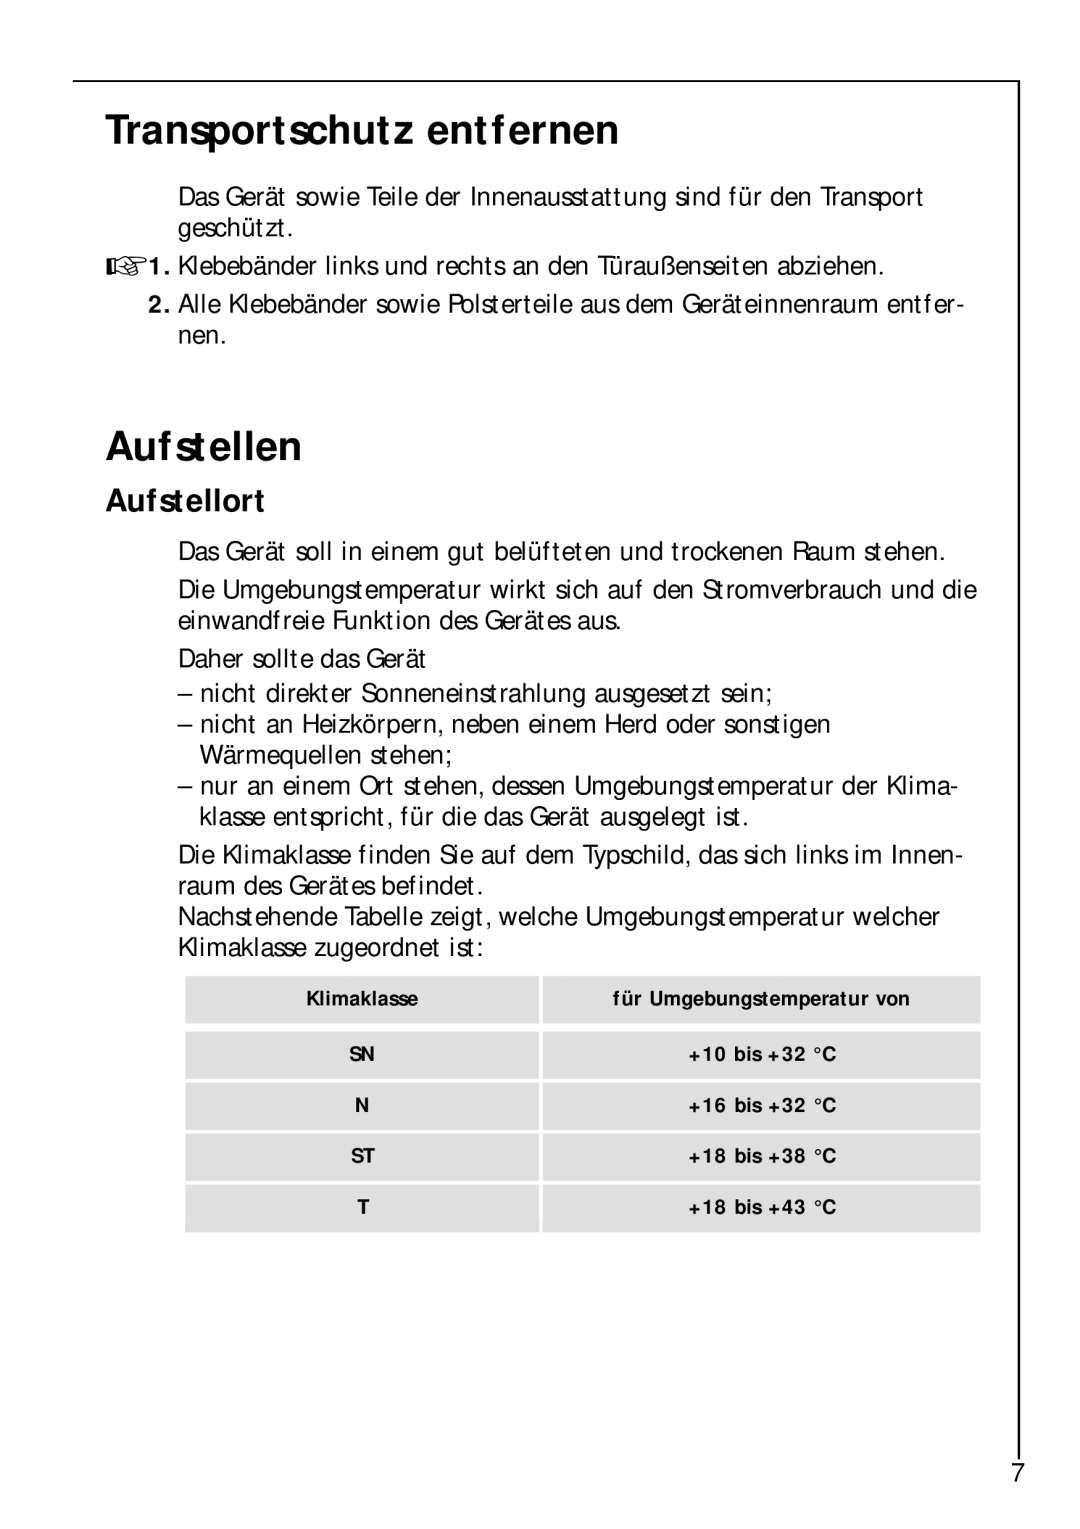 Electrolux Z 9 18 42-4 I user manual Transportschutz entfernen, Aufstellen, Aufstellort 